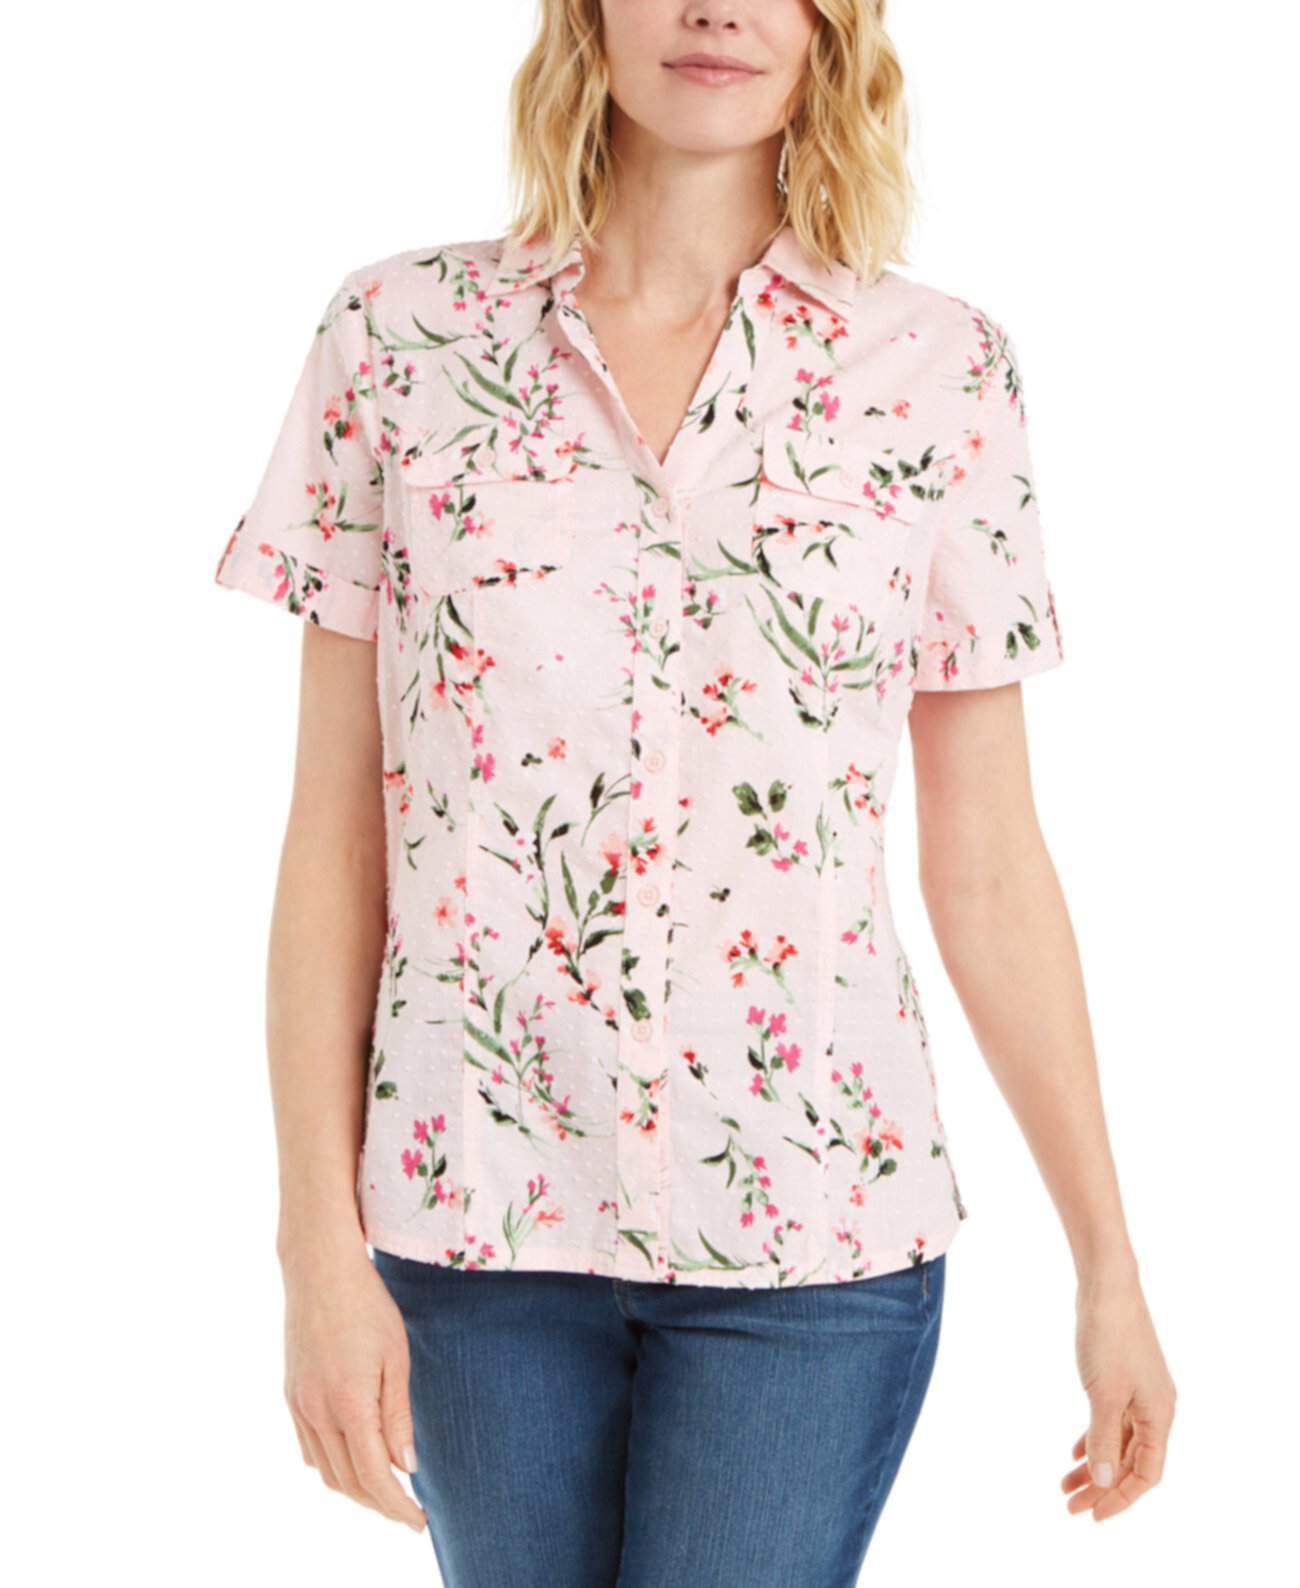 Хлопковая рубашка с цветочным принтом большого размера, созданная для Macy's Karen Scott